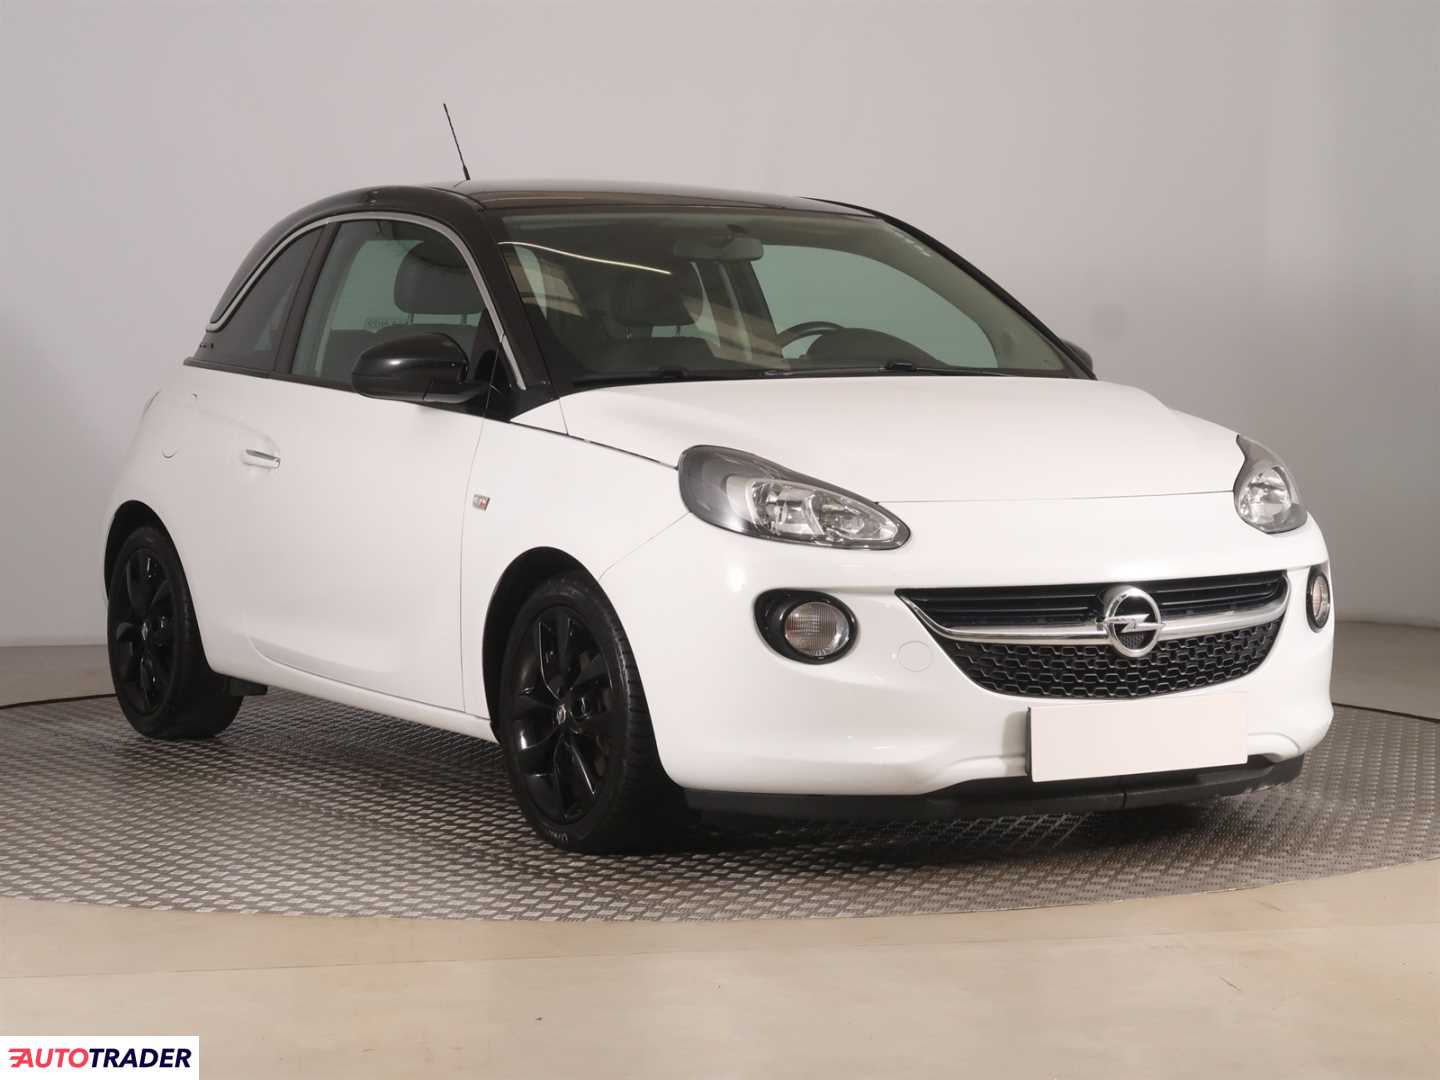 Opel Adam 2014 1.4 99 KM